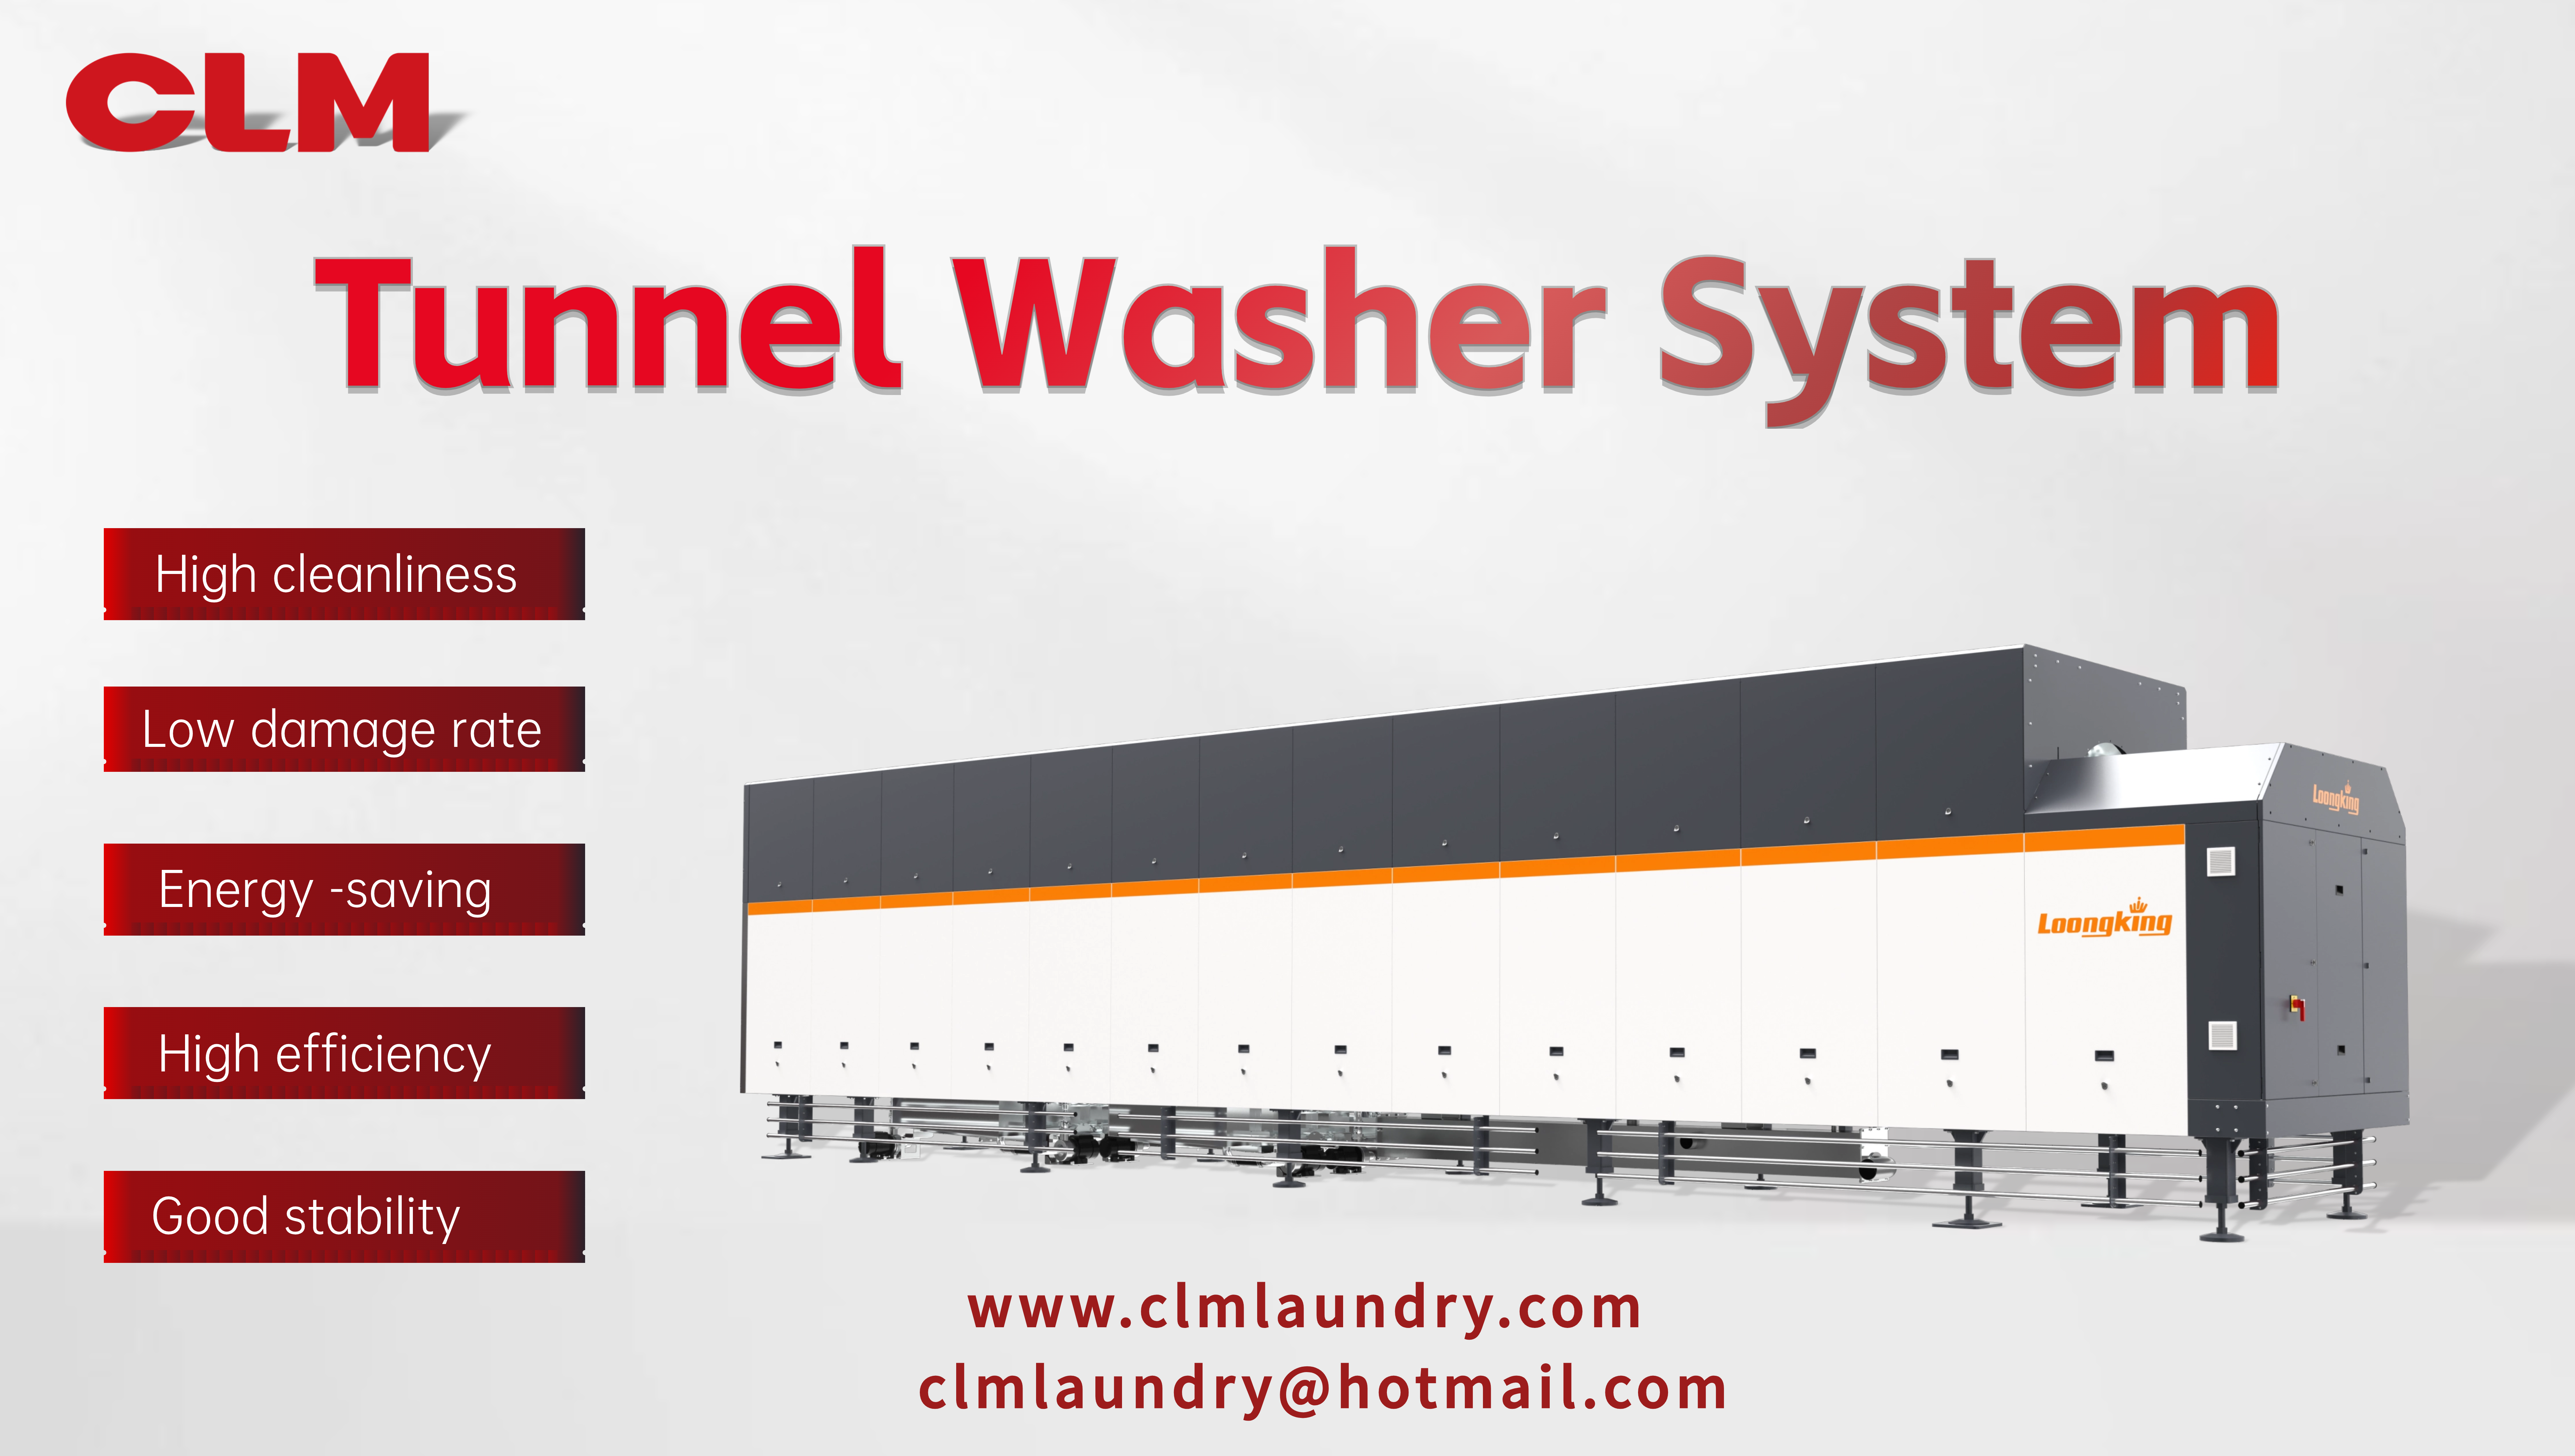 Το σύστημα πλυσίματος τούνελ CLM επιτυγχάνει ικανότητα πλύσης 1,8 τόνων την ώρα με έναν μόνο υπάλληλο!